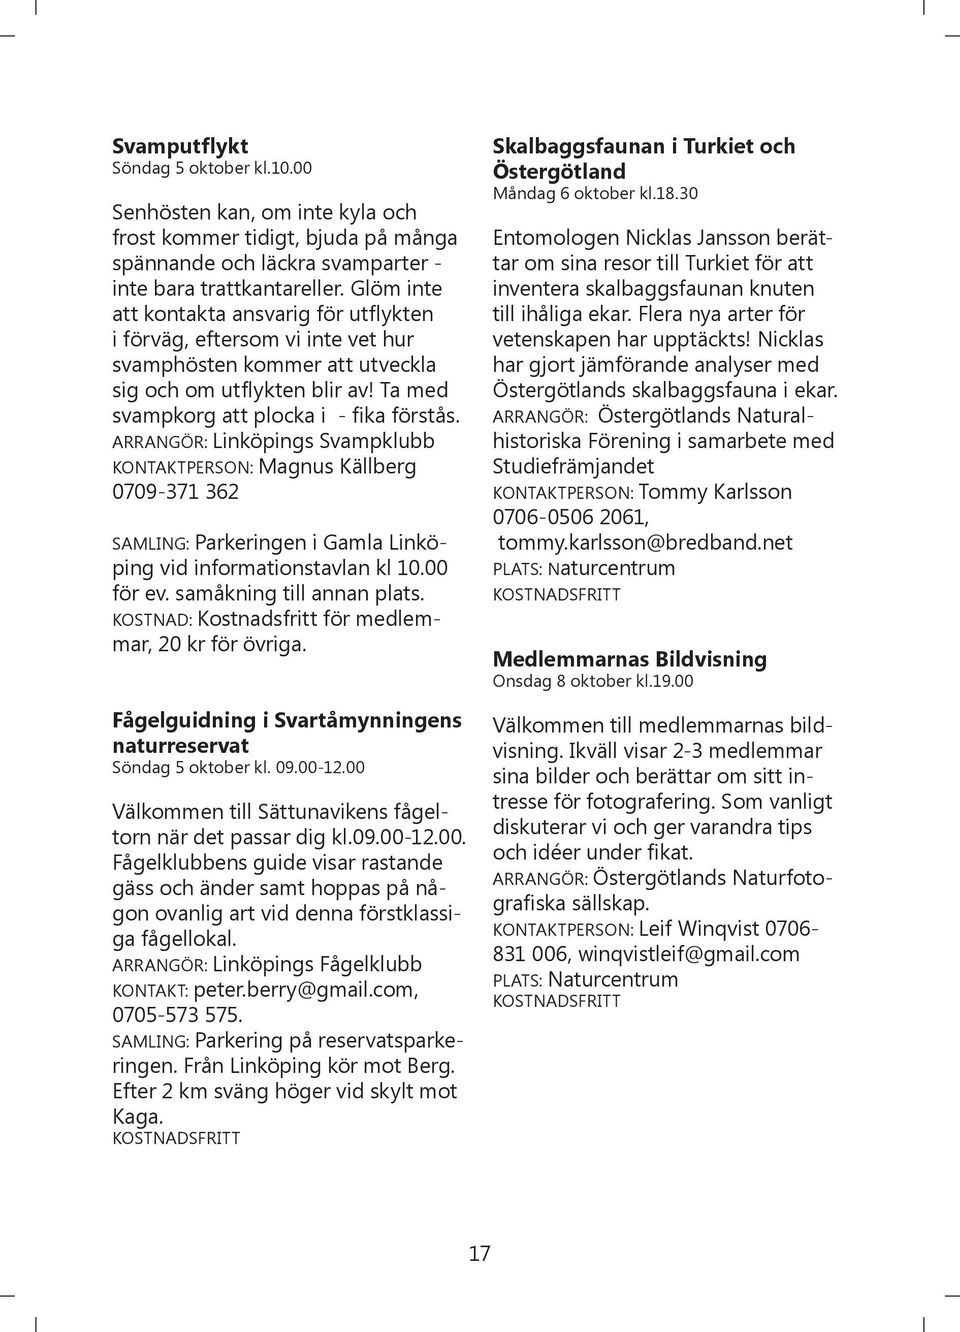 ARRANGÖR: Linköpings Svampklubb KONTAKTPERSON: Magnus Källberg 0709-371 362 SAMLING: Parkeringen i Gamla Linköping vid informationstavlan kl 10.00 för ev. samåkning till annan plats.